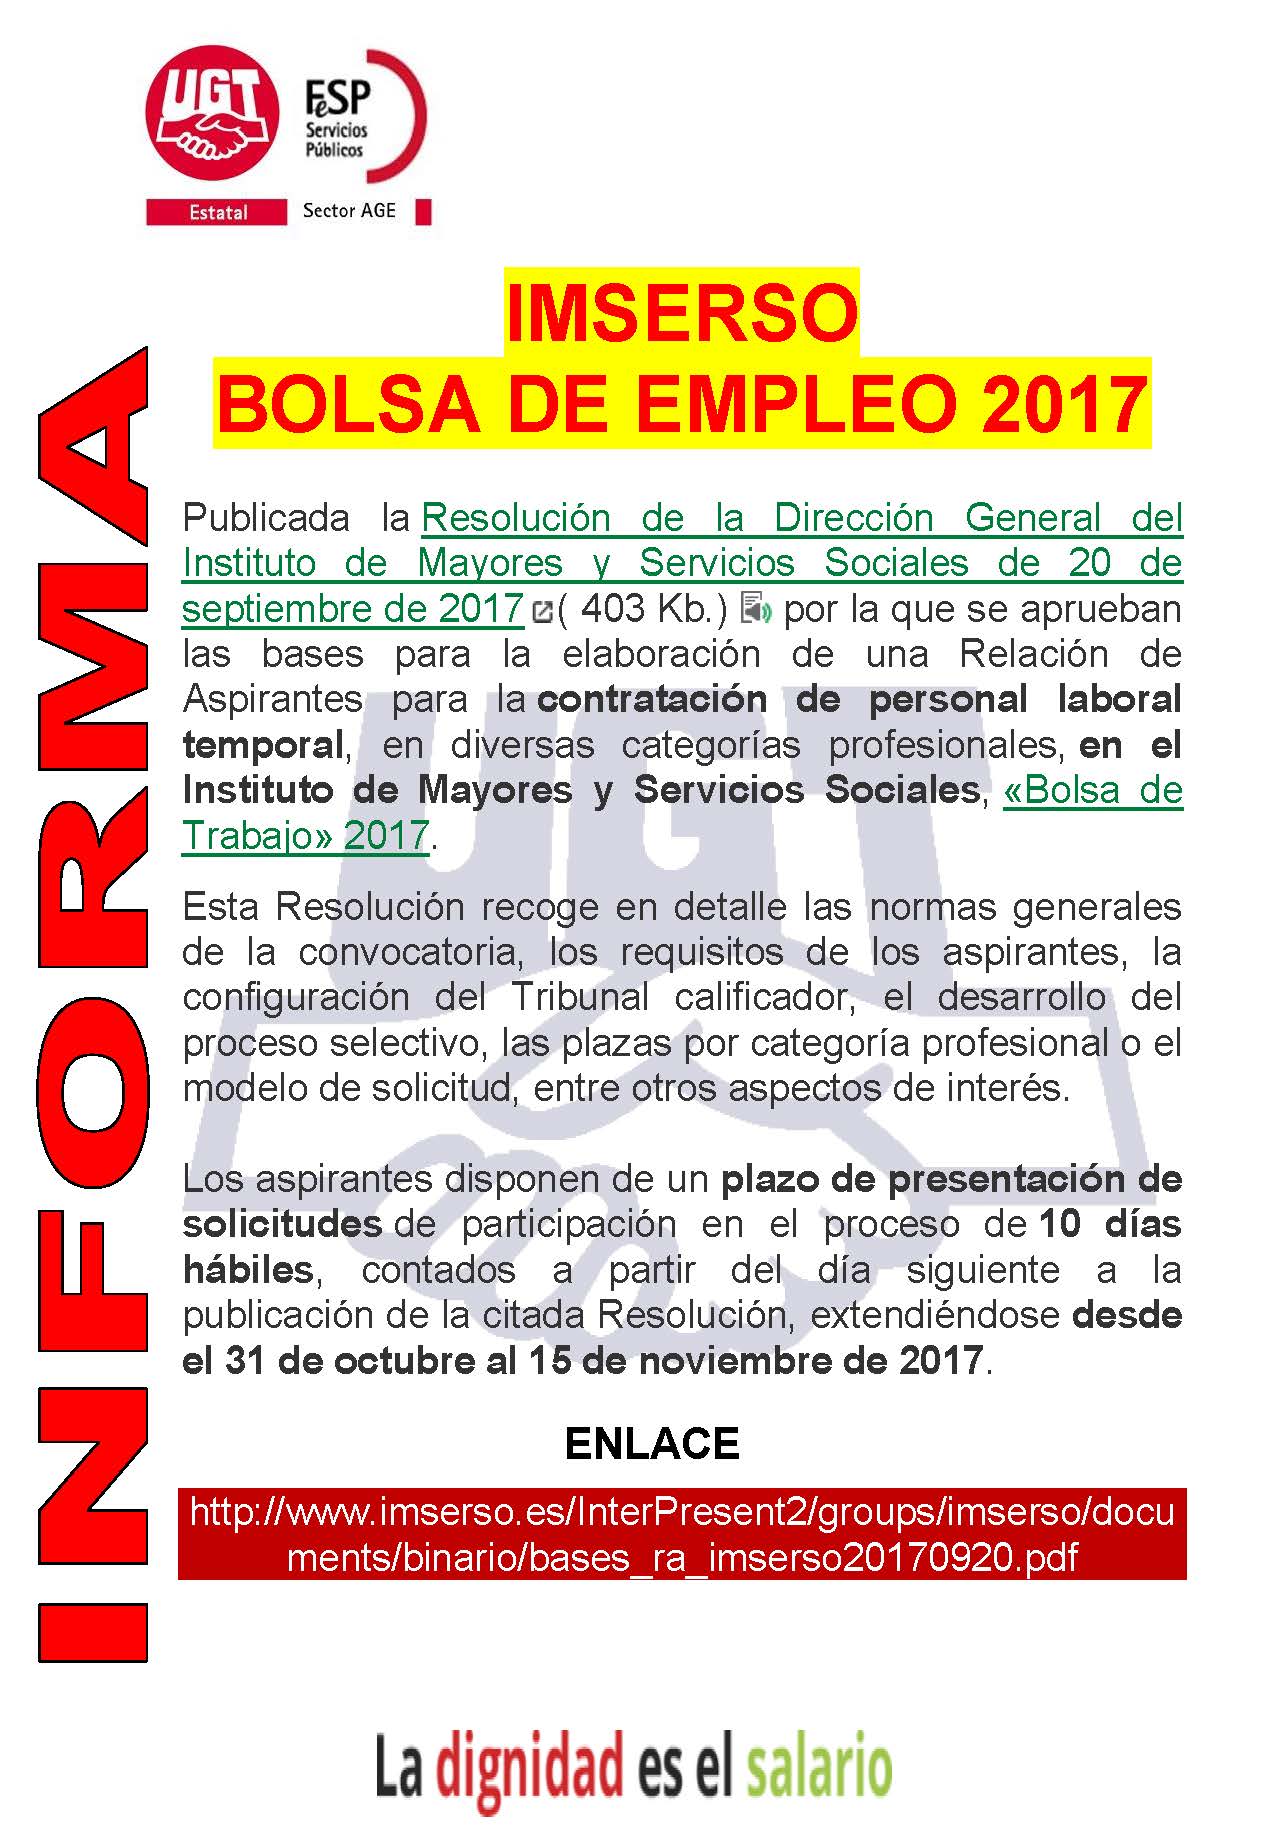 Bolsa empleo el IMSERSO - UGT Servicios Córdoba